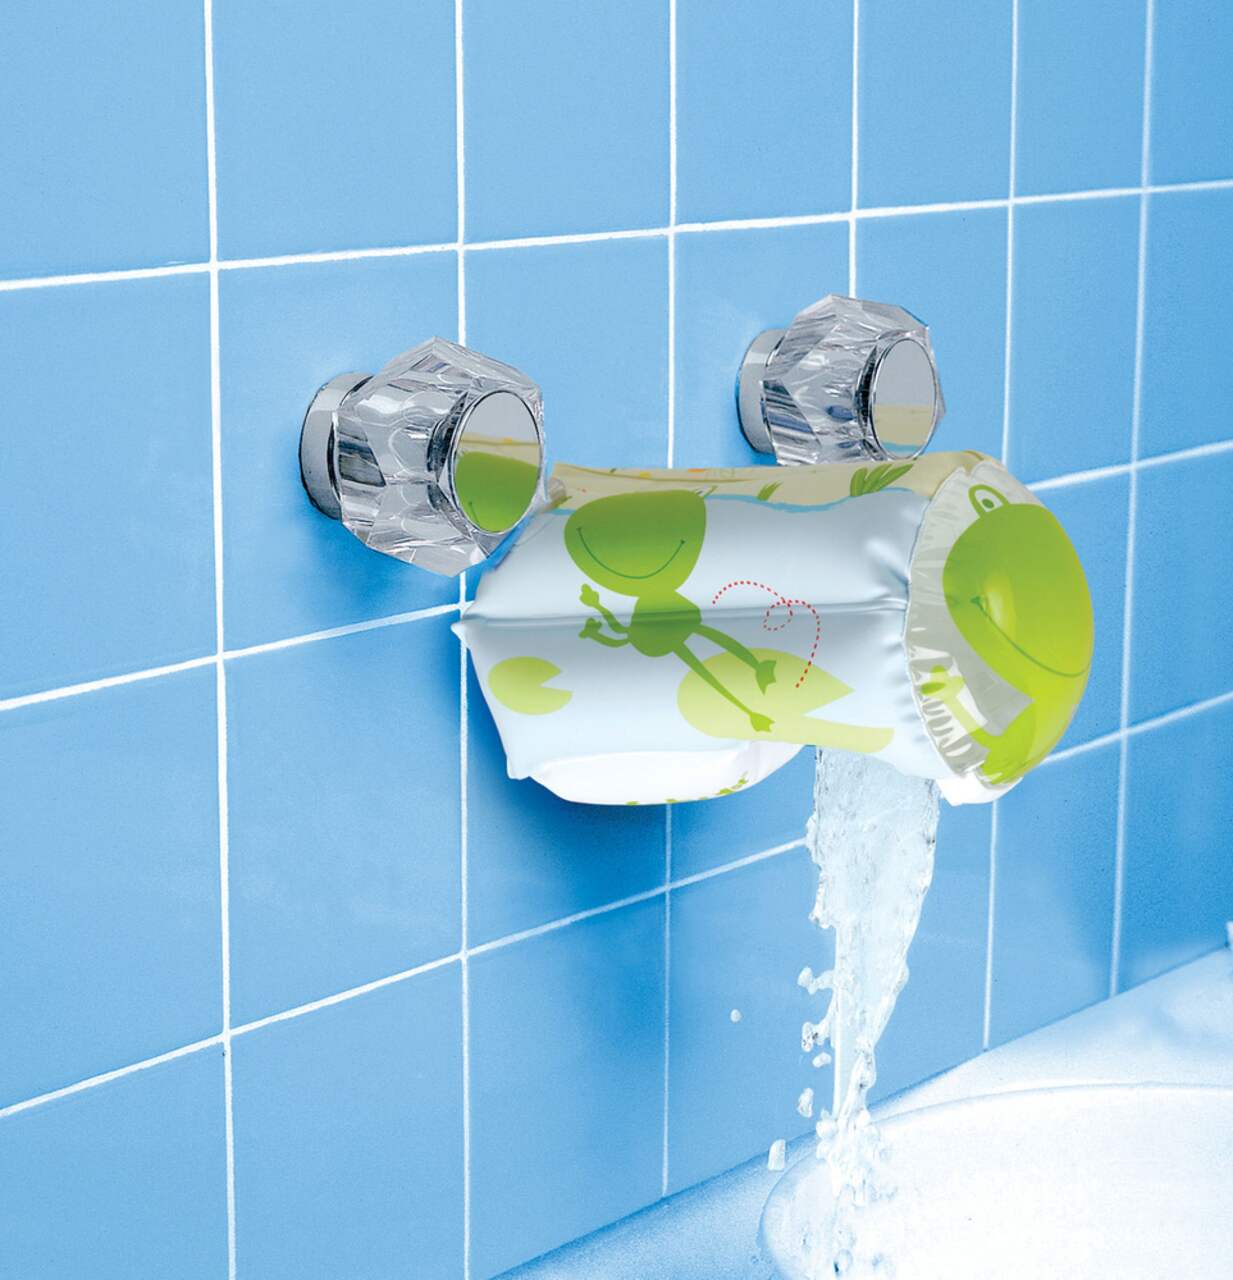 Housse de bec de bain, housse de robinet en silicone whale pour la  protection de sécurité de la baignoire pour bébé